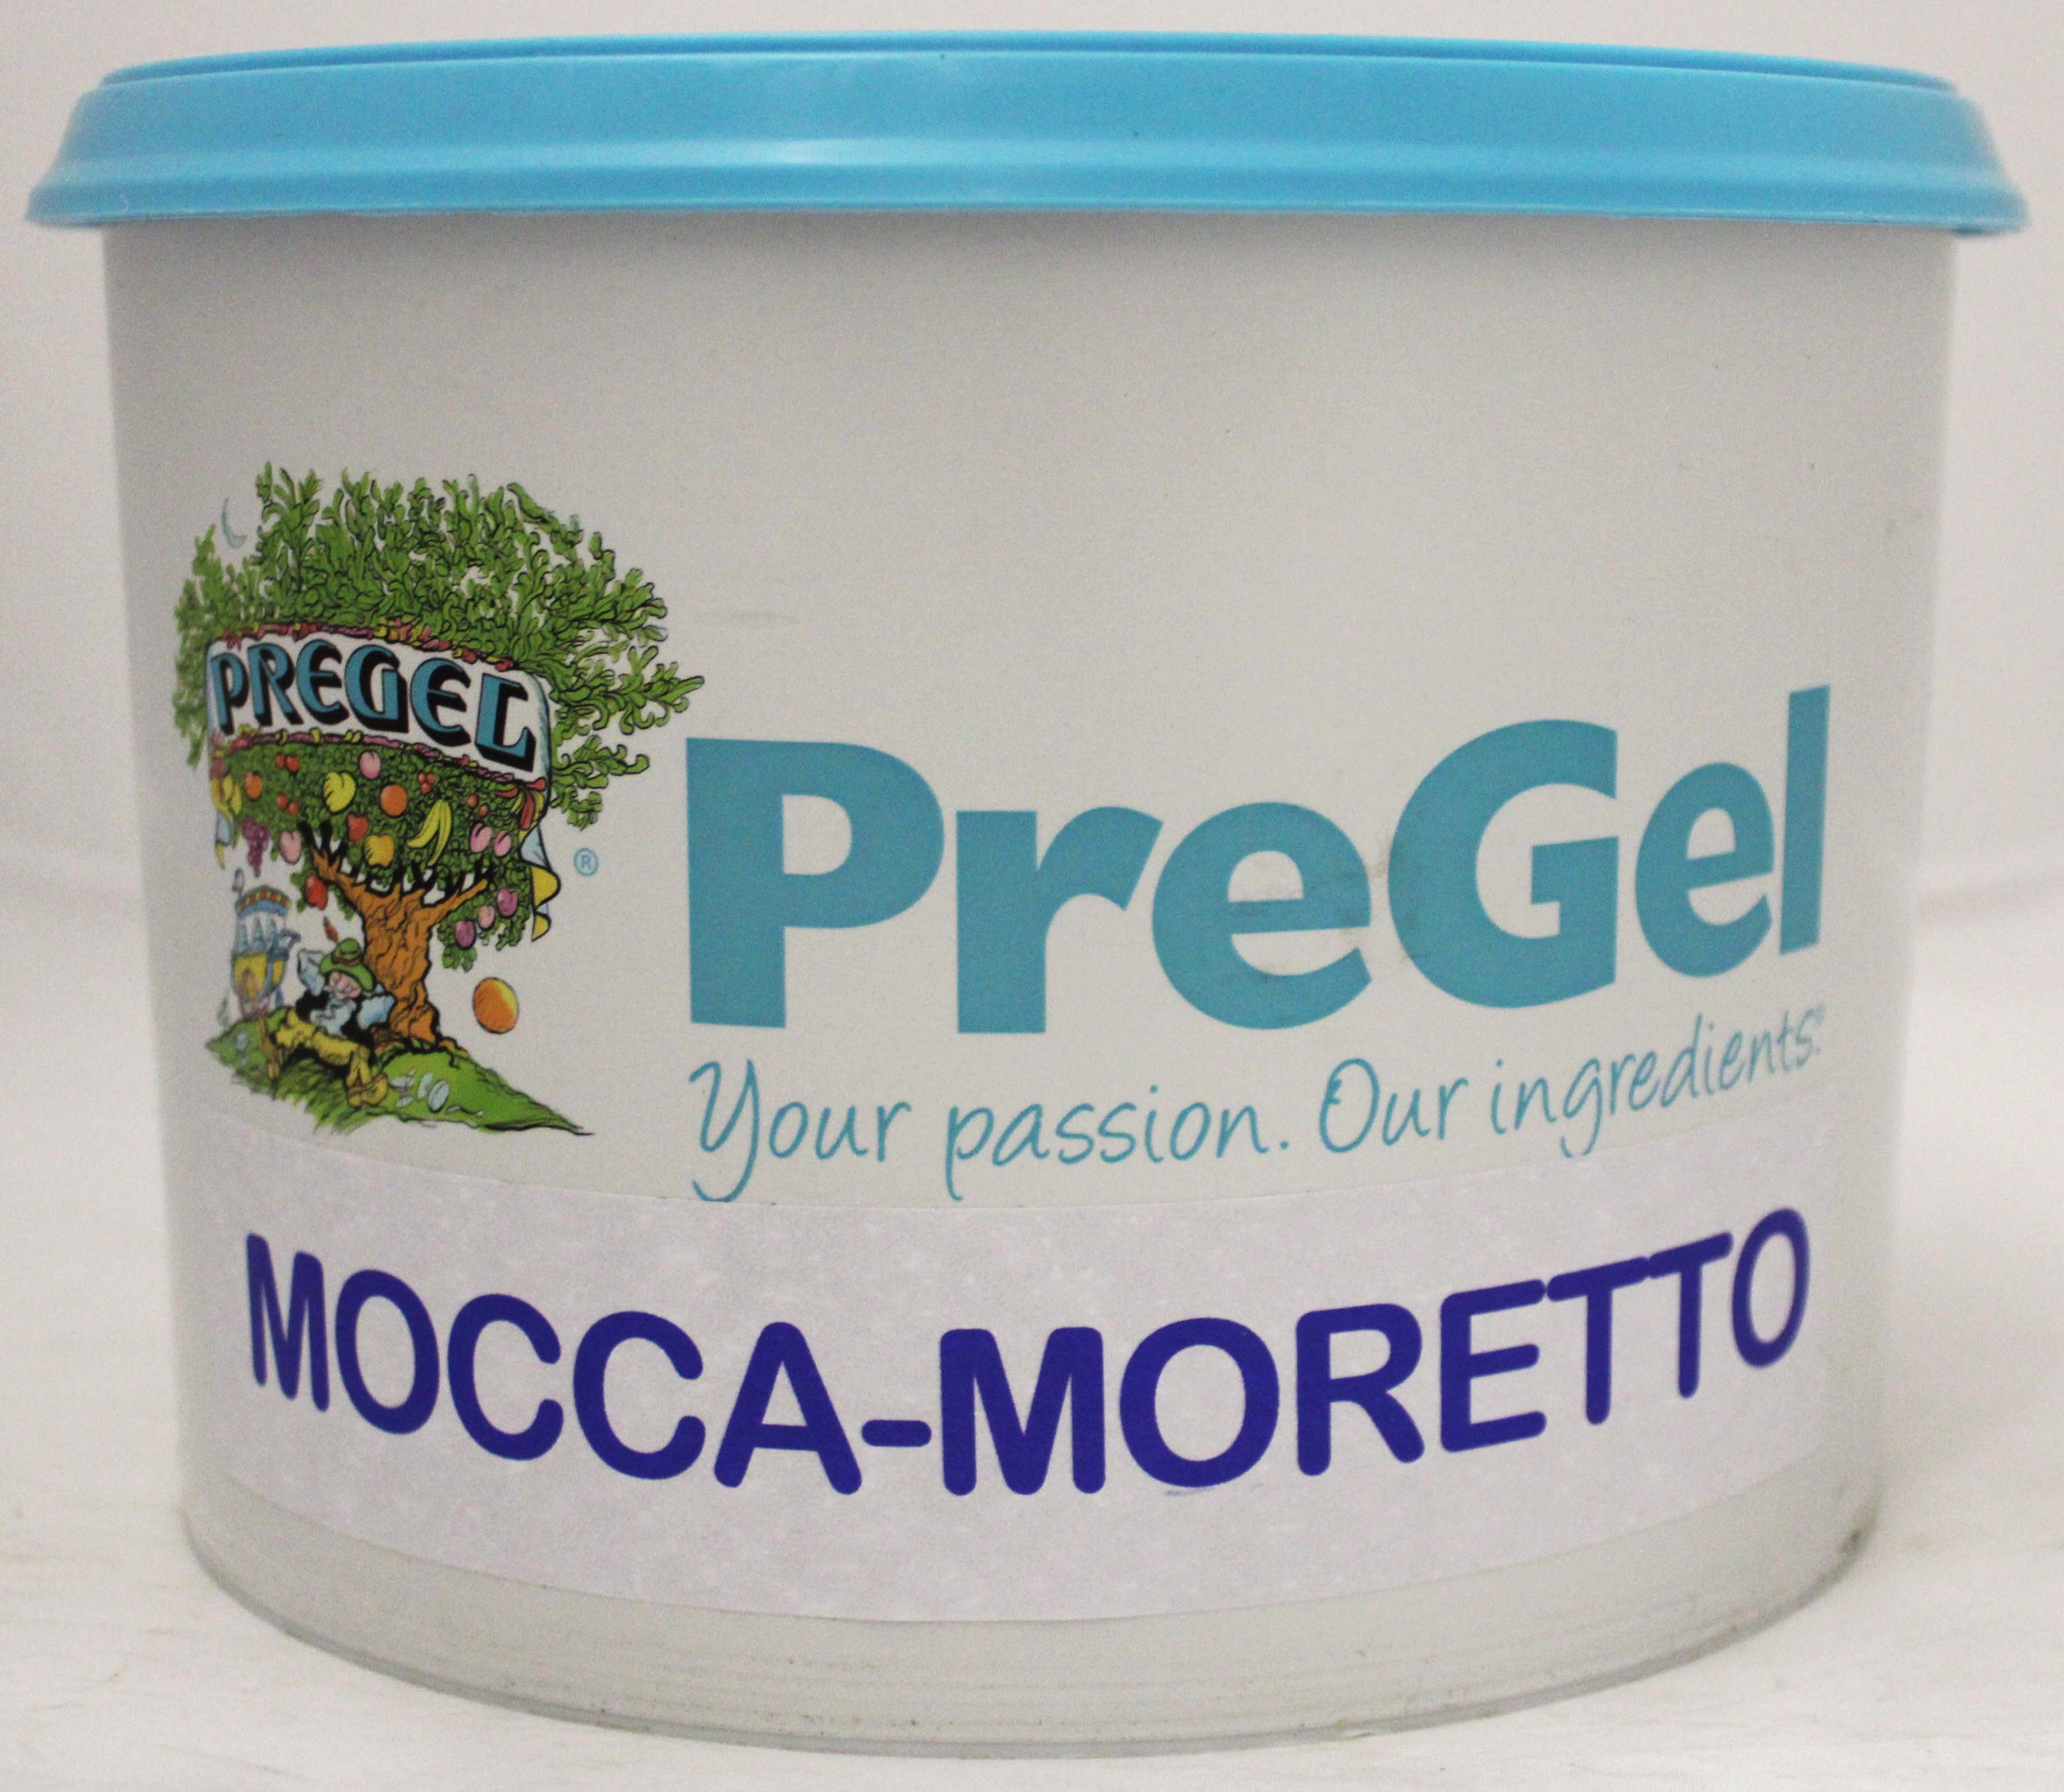 Pregel Mocca-Moretto 3kg Dose 50172